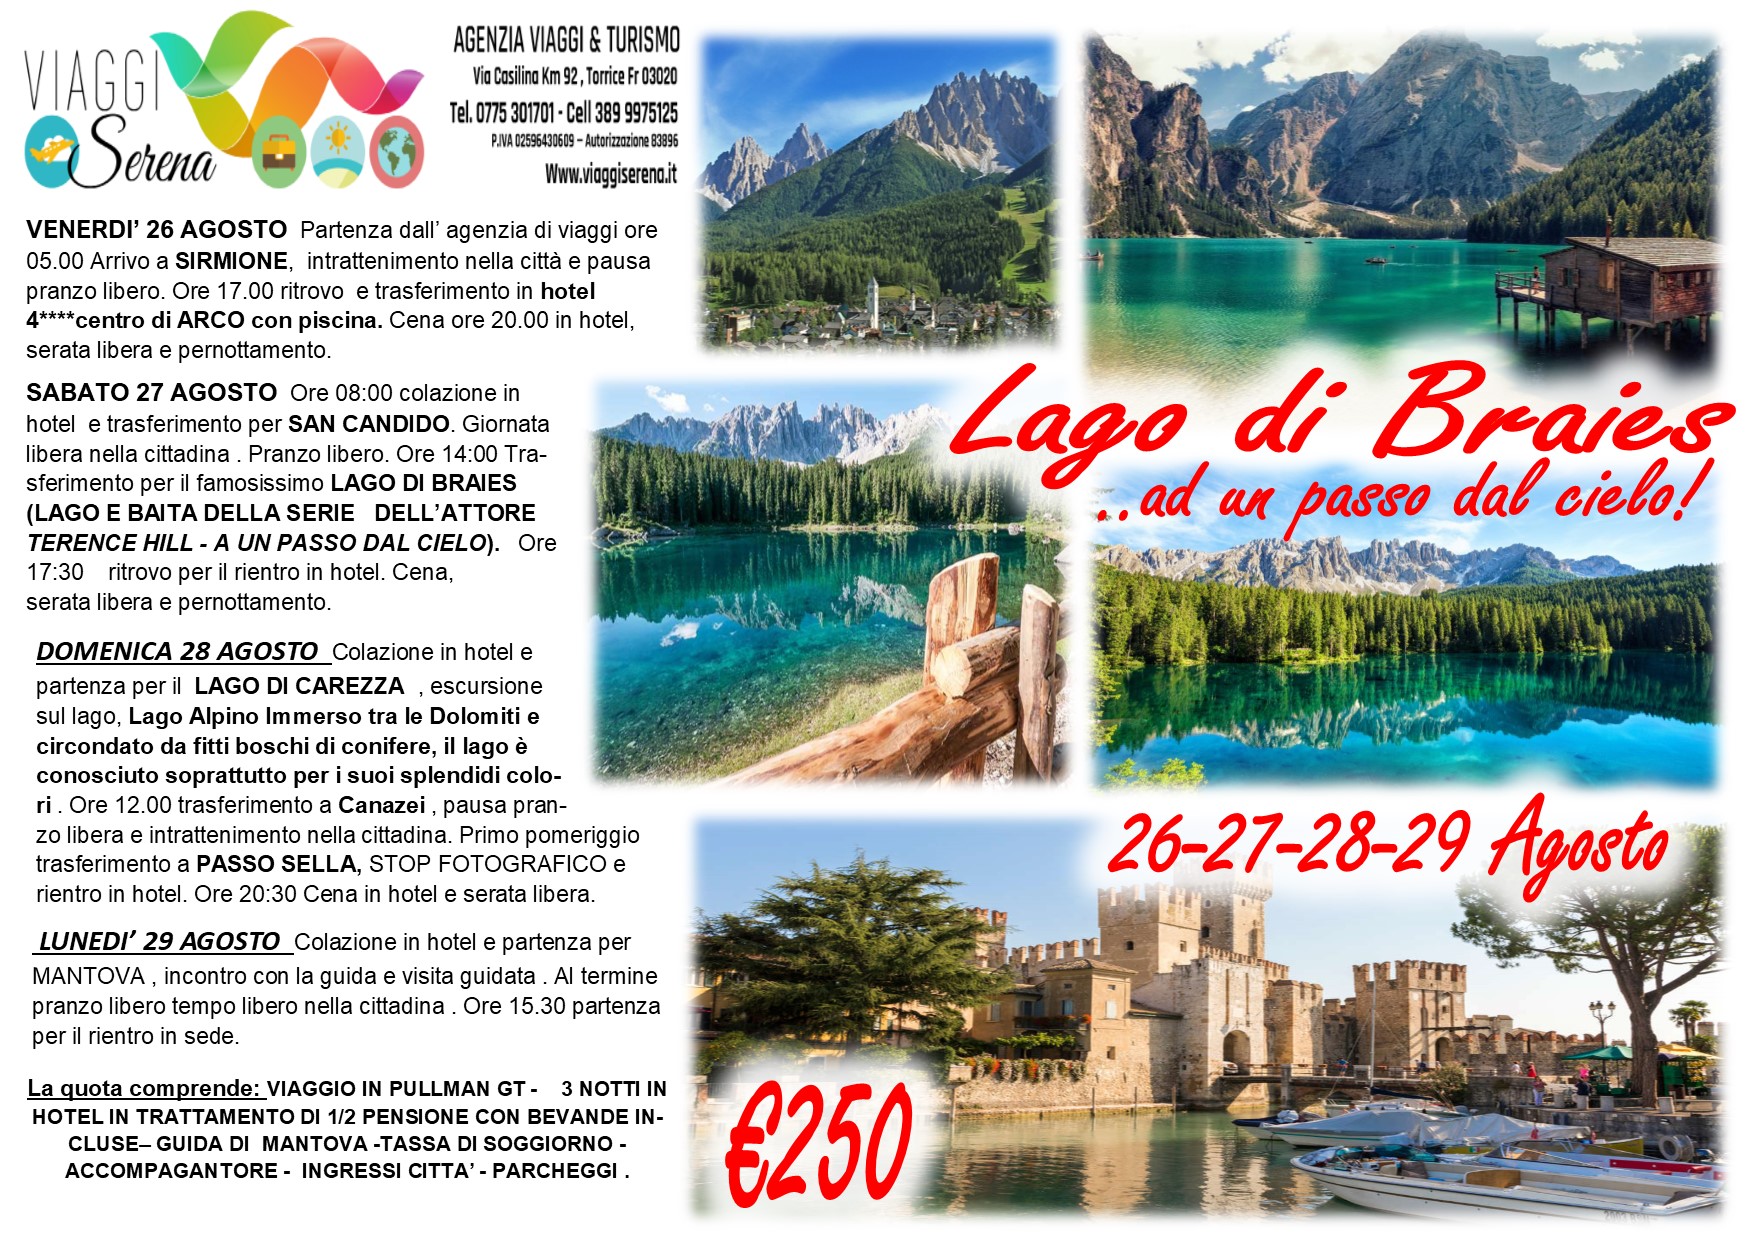 Viaggi di Gruppo: Lago di Braies & Lago di Carezza, Mantova e Passo Sella 26-27-28-29 Agosto €250,00